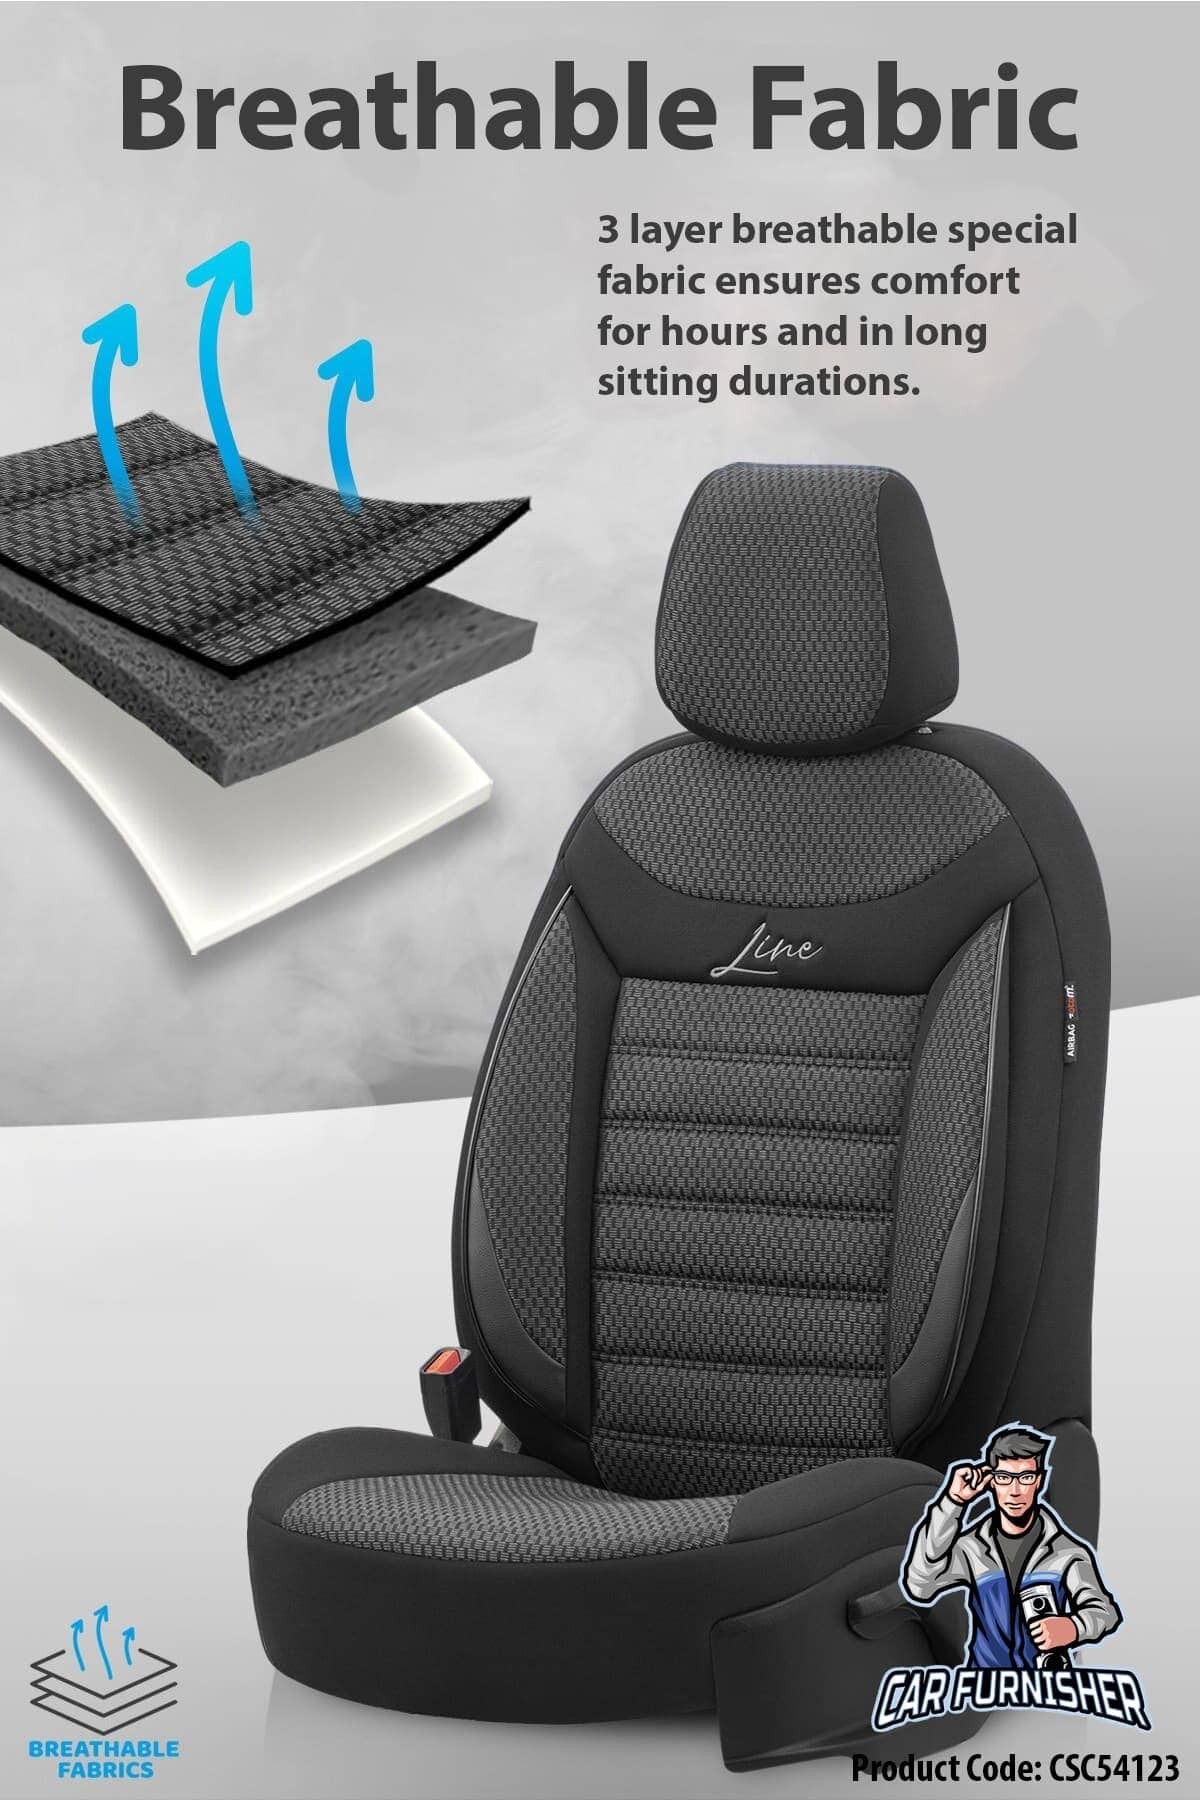 HOT NFL Detroit Lions Louis Vuitton 3D Car Seat Cover - Express your unique  style with BoxBoxShirt